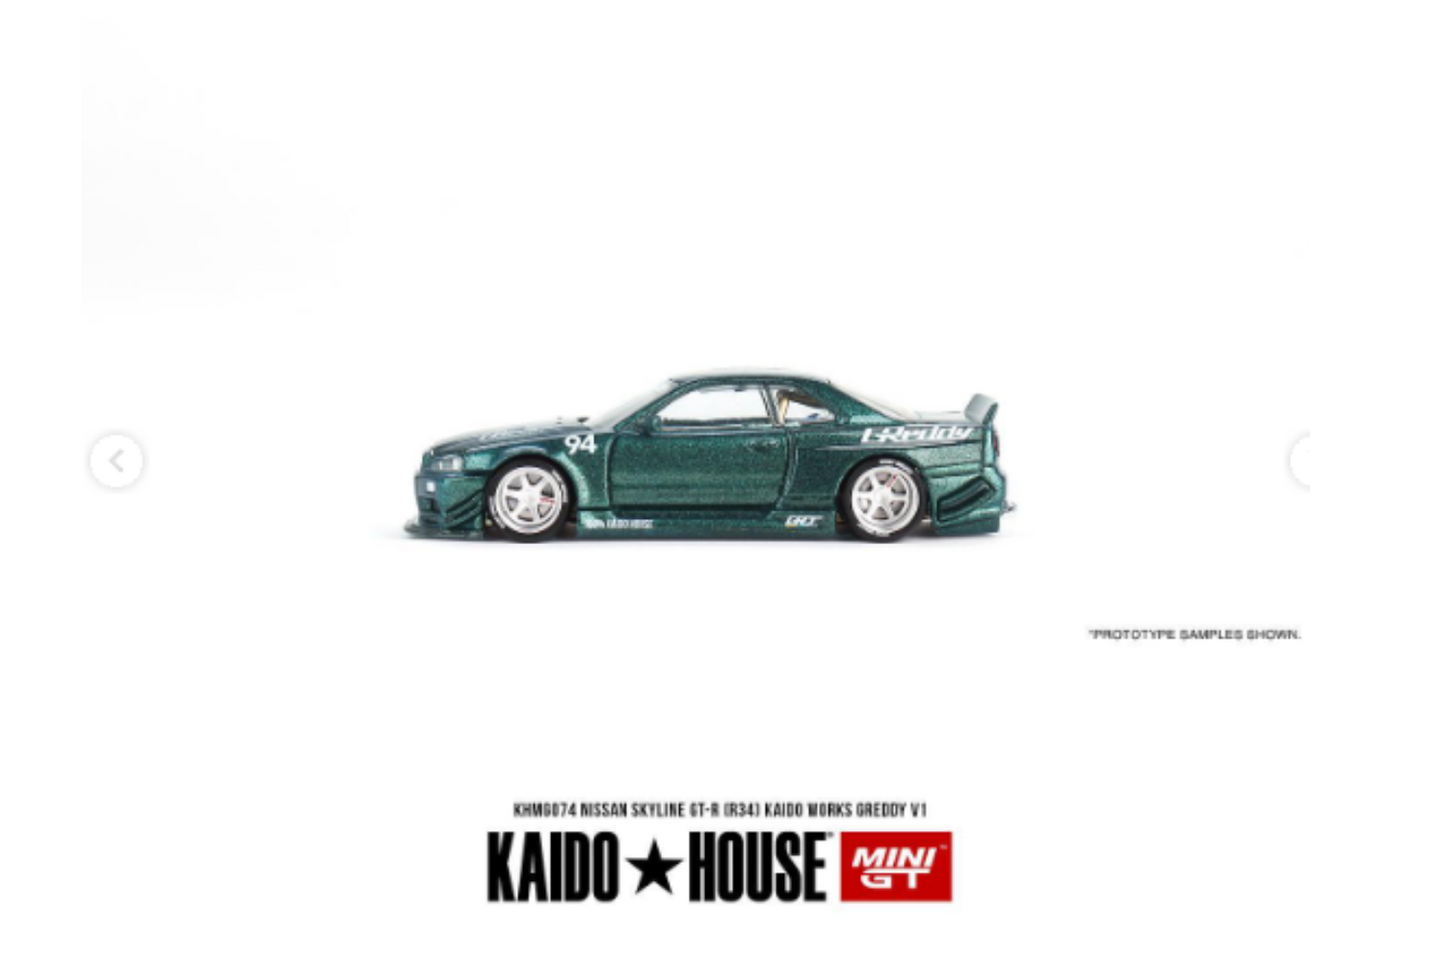 Mini GT x Kaido House Nissan Skyline BNR34 GT-R Greddy V1